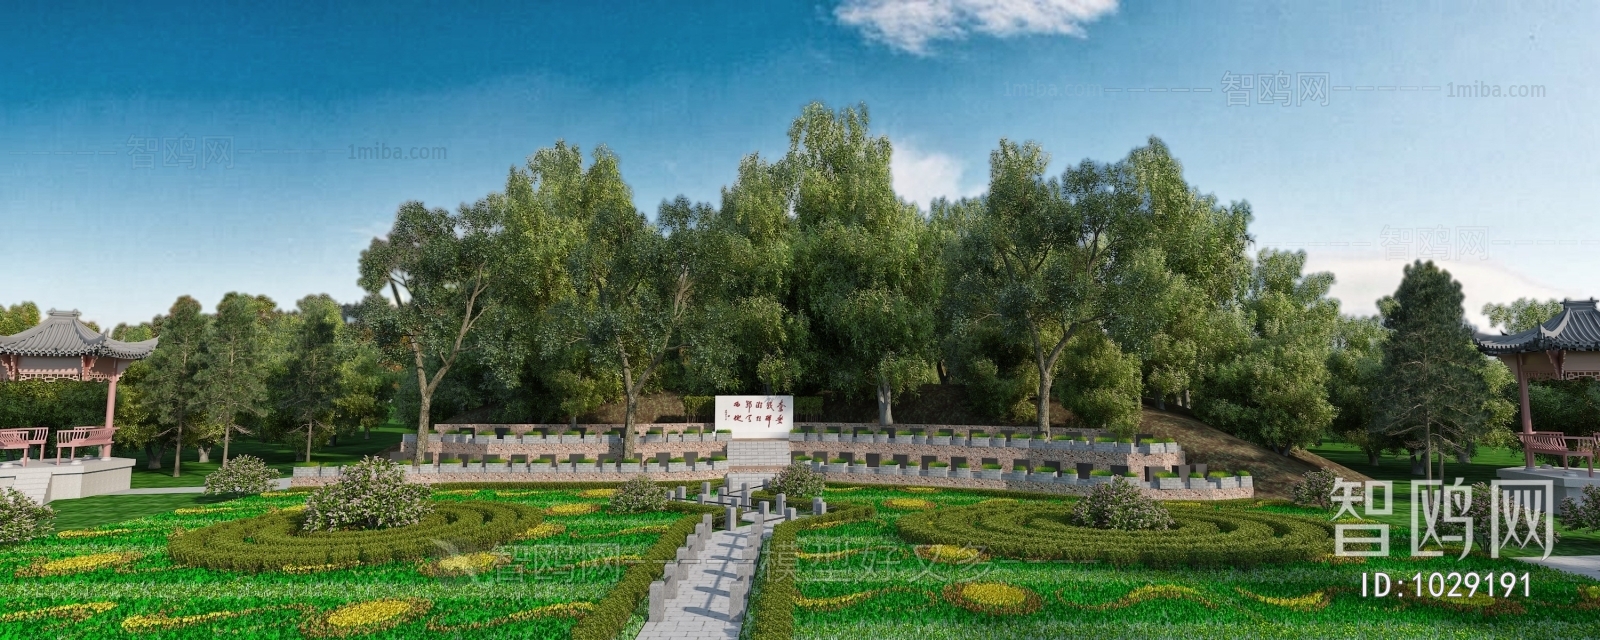 新中式烈士陵园 花圃